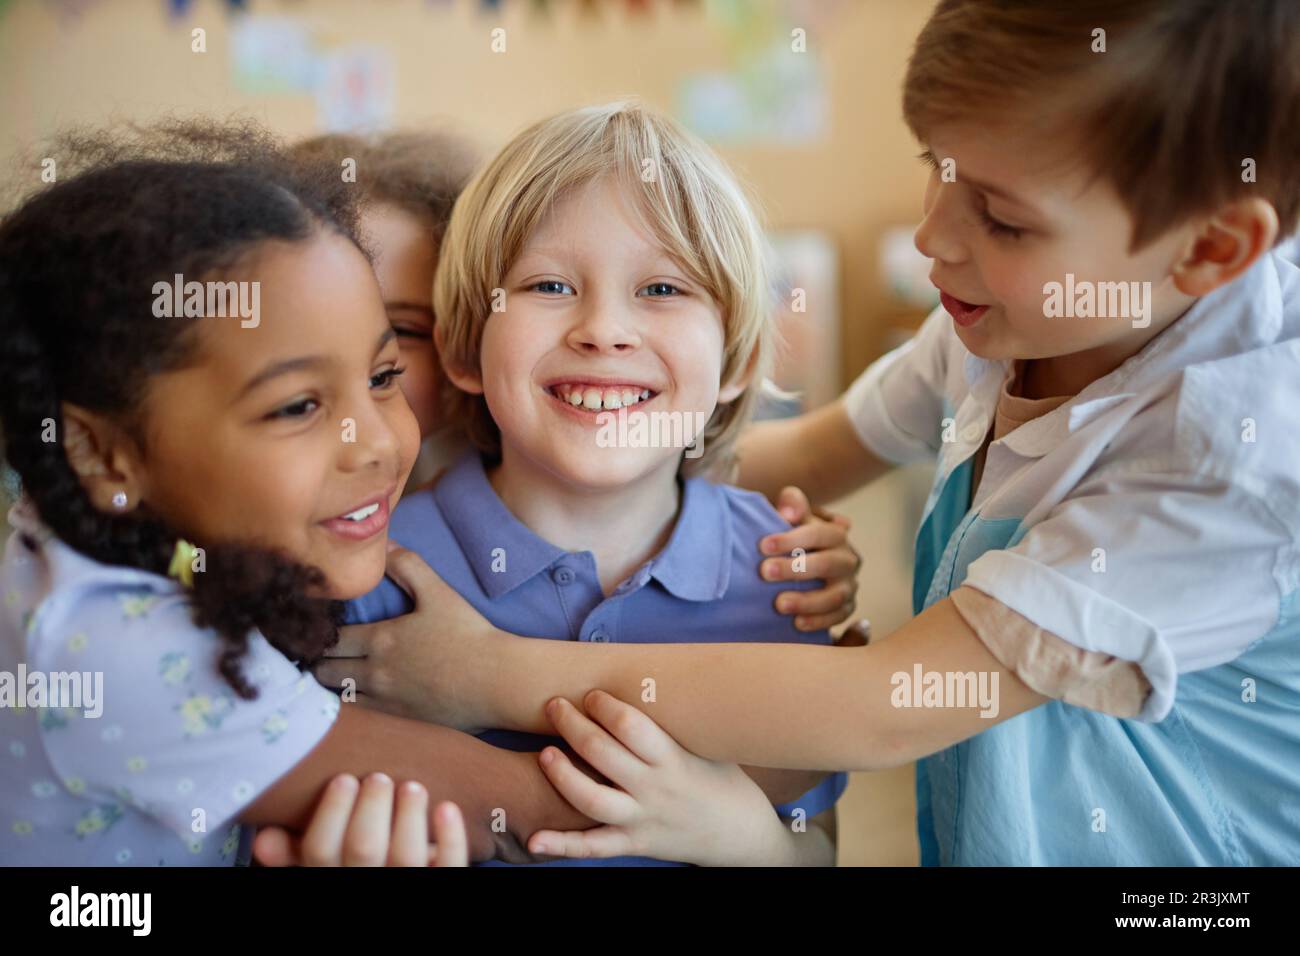 Eine vielfältige Gruppe von Kindern, die sich glücklich umarmen, während sie zusammen spielen und lächeln Stockfoto